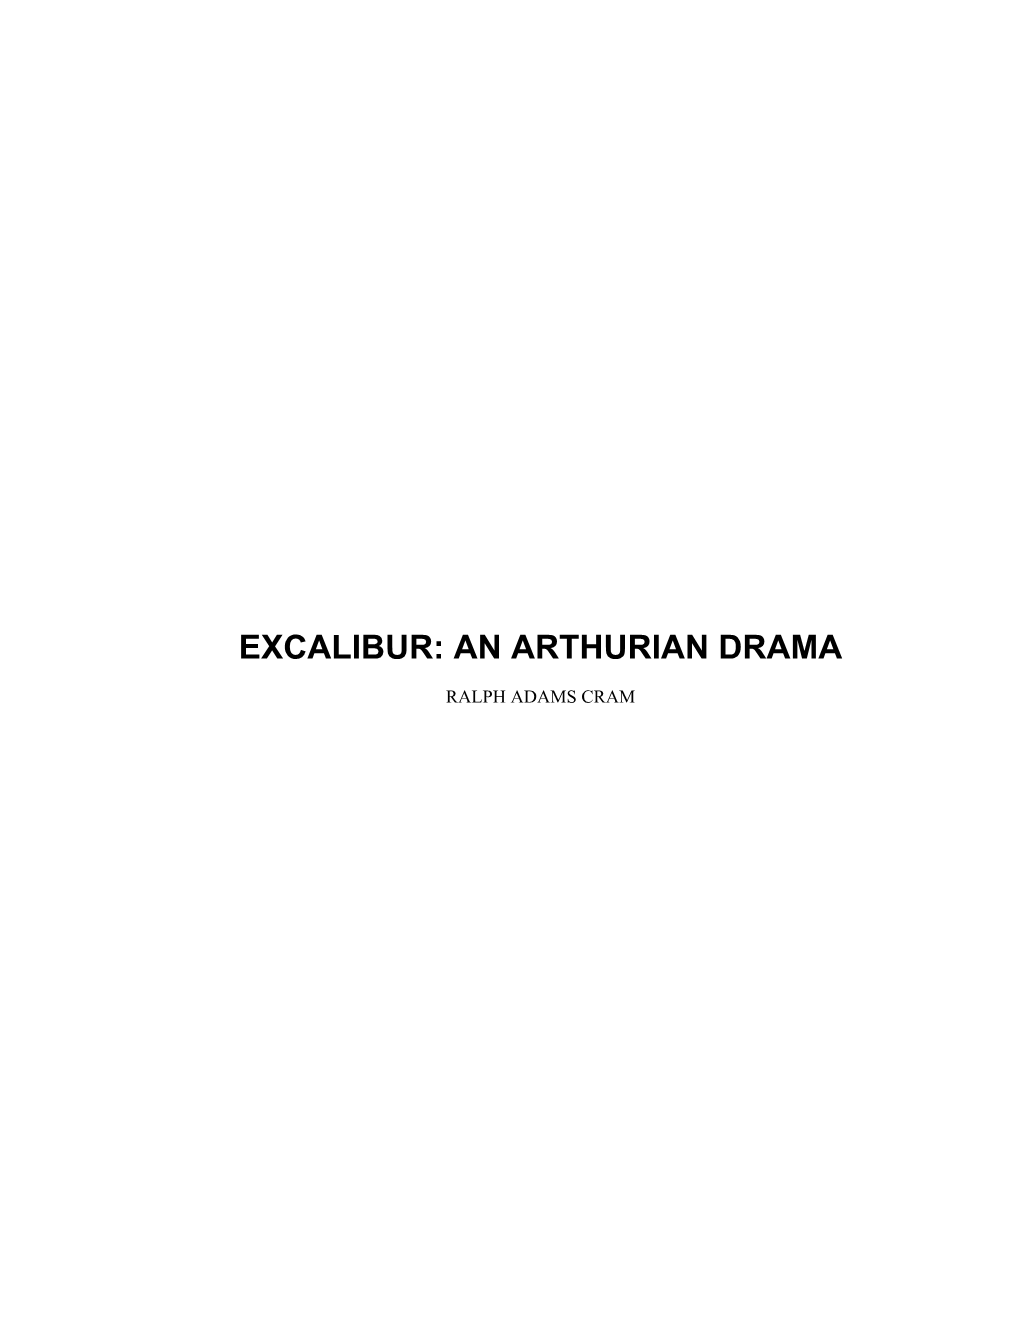 An Arthurian Drama